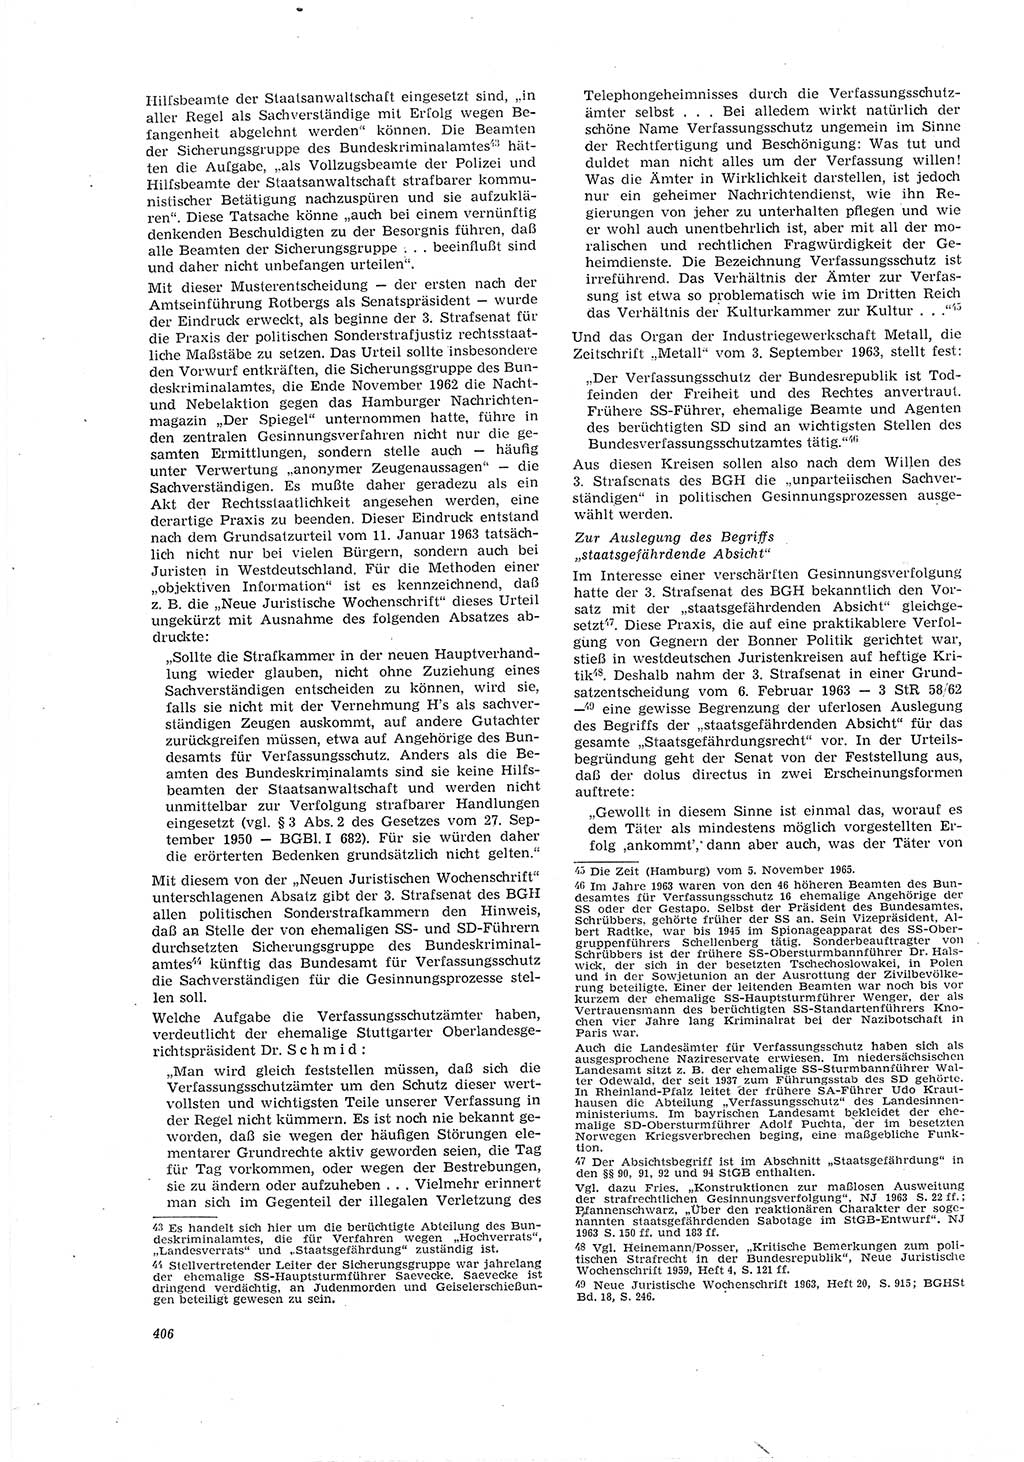 Neue Justiz (NJ), Zeitschrift für Recht und Rechtswissenschaft [Deutsche Demokratische Republik (DDR)], 20. Jahrgang 1966, Seite 406 (NJ DDR 1966, S. 406)